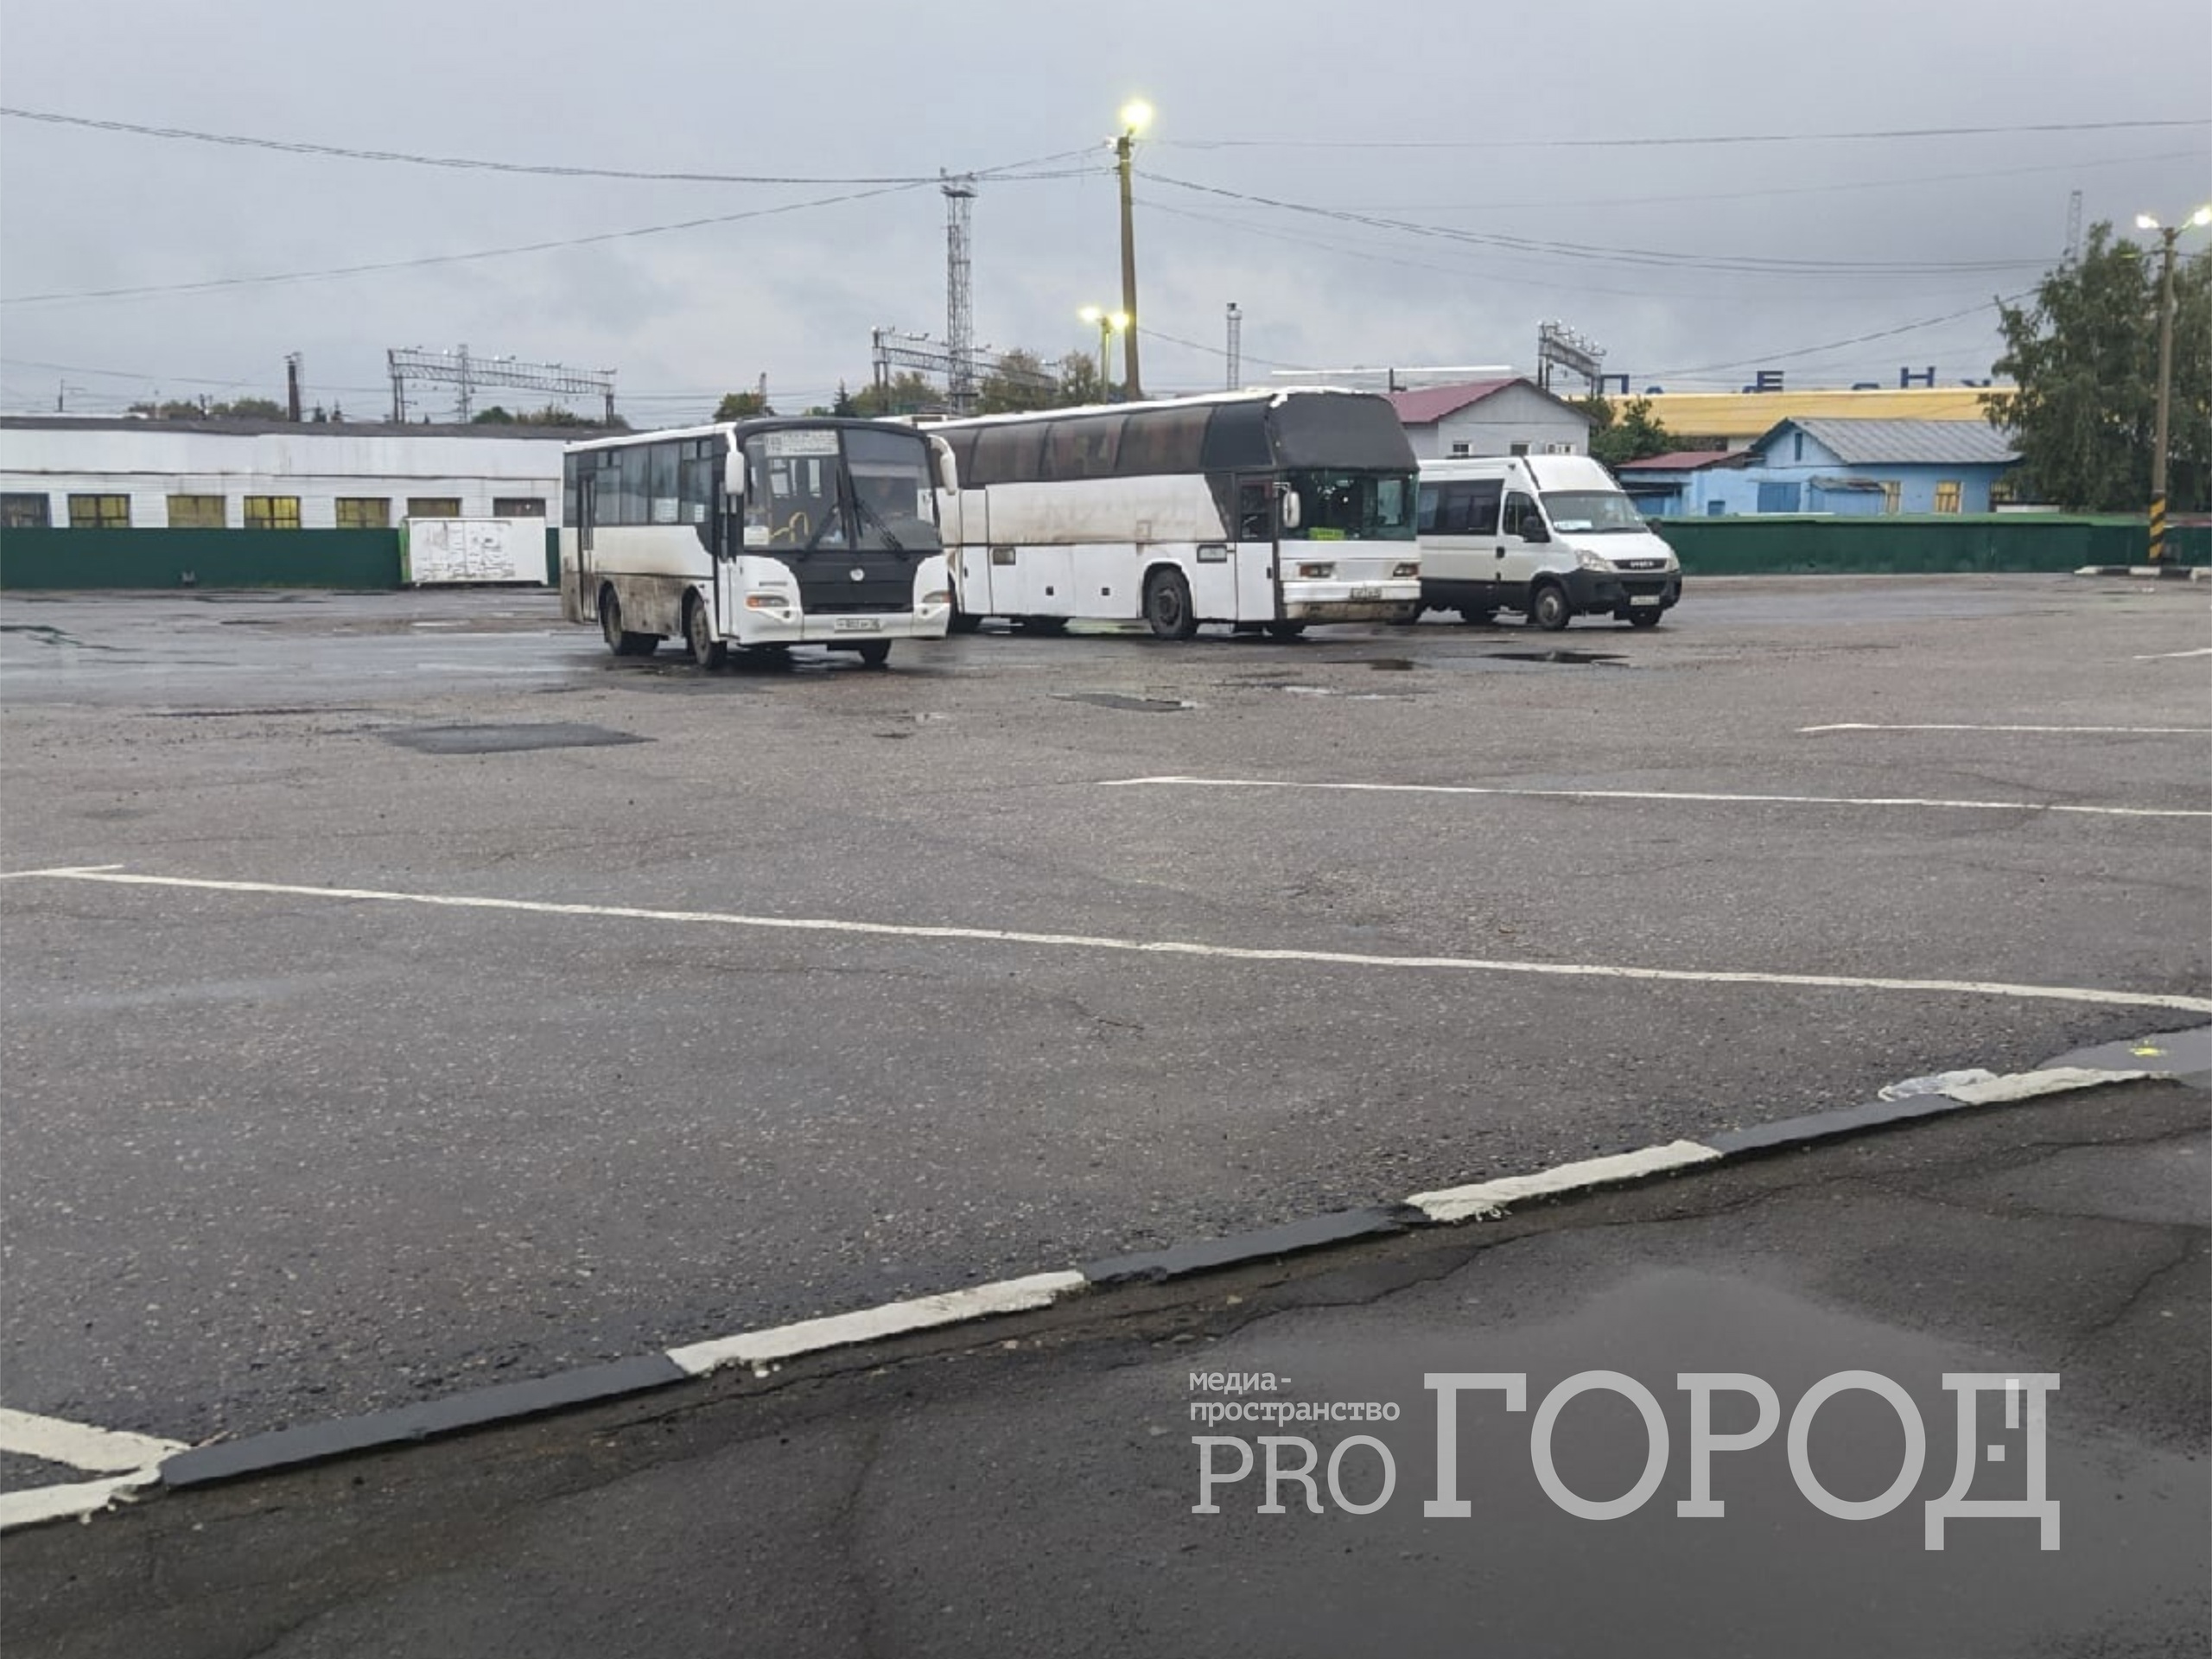 Олег Мельниченко рассказал о планах по закупке 79 автобусов для межмуниципальных перевозок